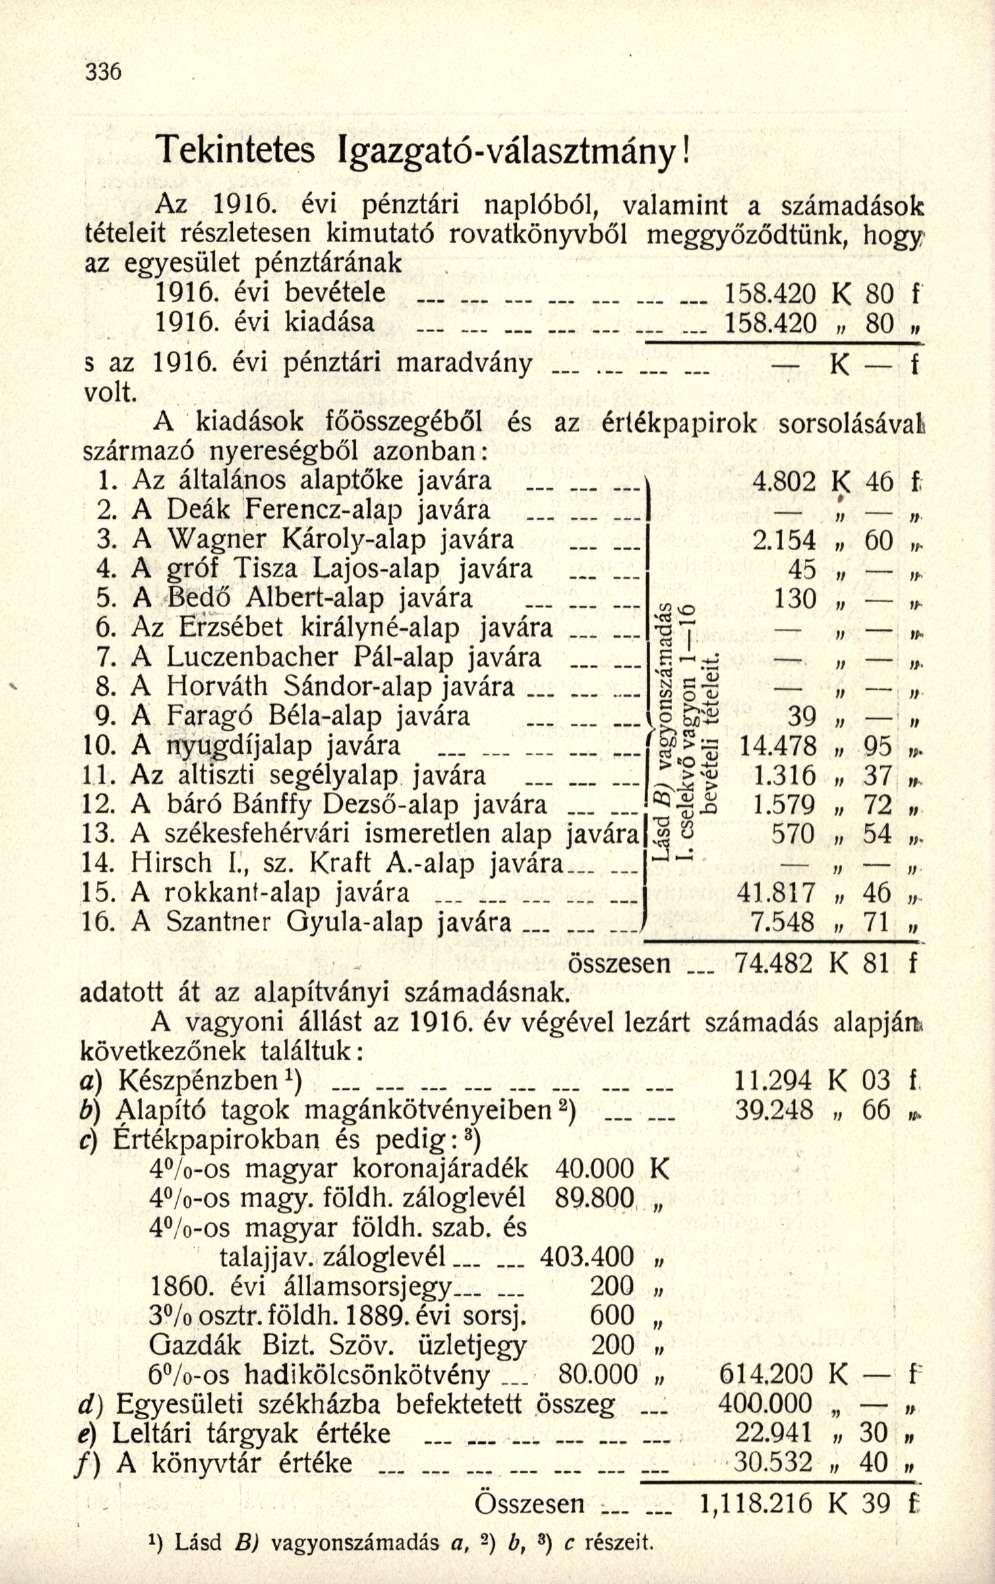 Tekintetes Igazgató-választmány! Az 1916. évi pénztári naplóból, valamint a számadások tételeit részletesen kimutató rovatkönyvből meggyőződtünk, hogy az egyesület pénztárának 1916. évi bevétele 158.